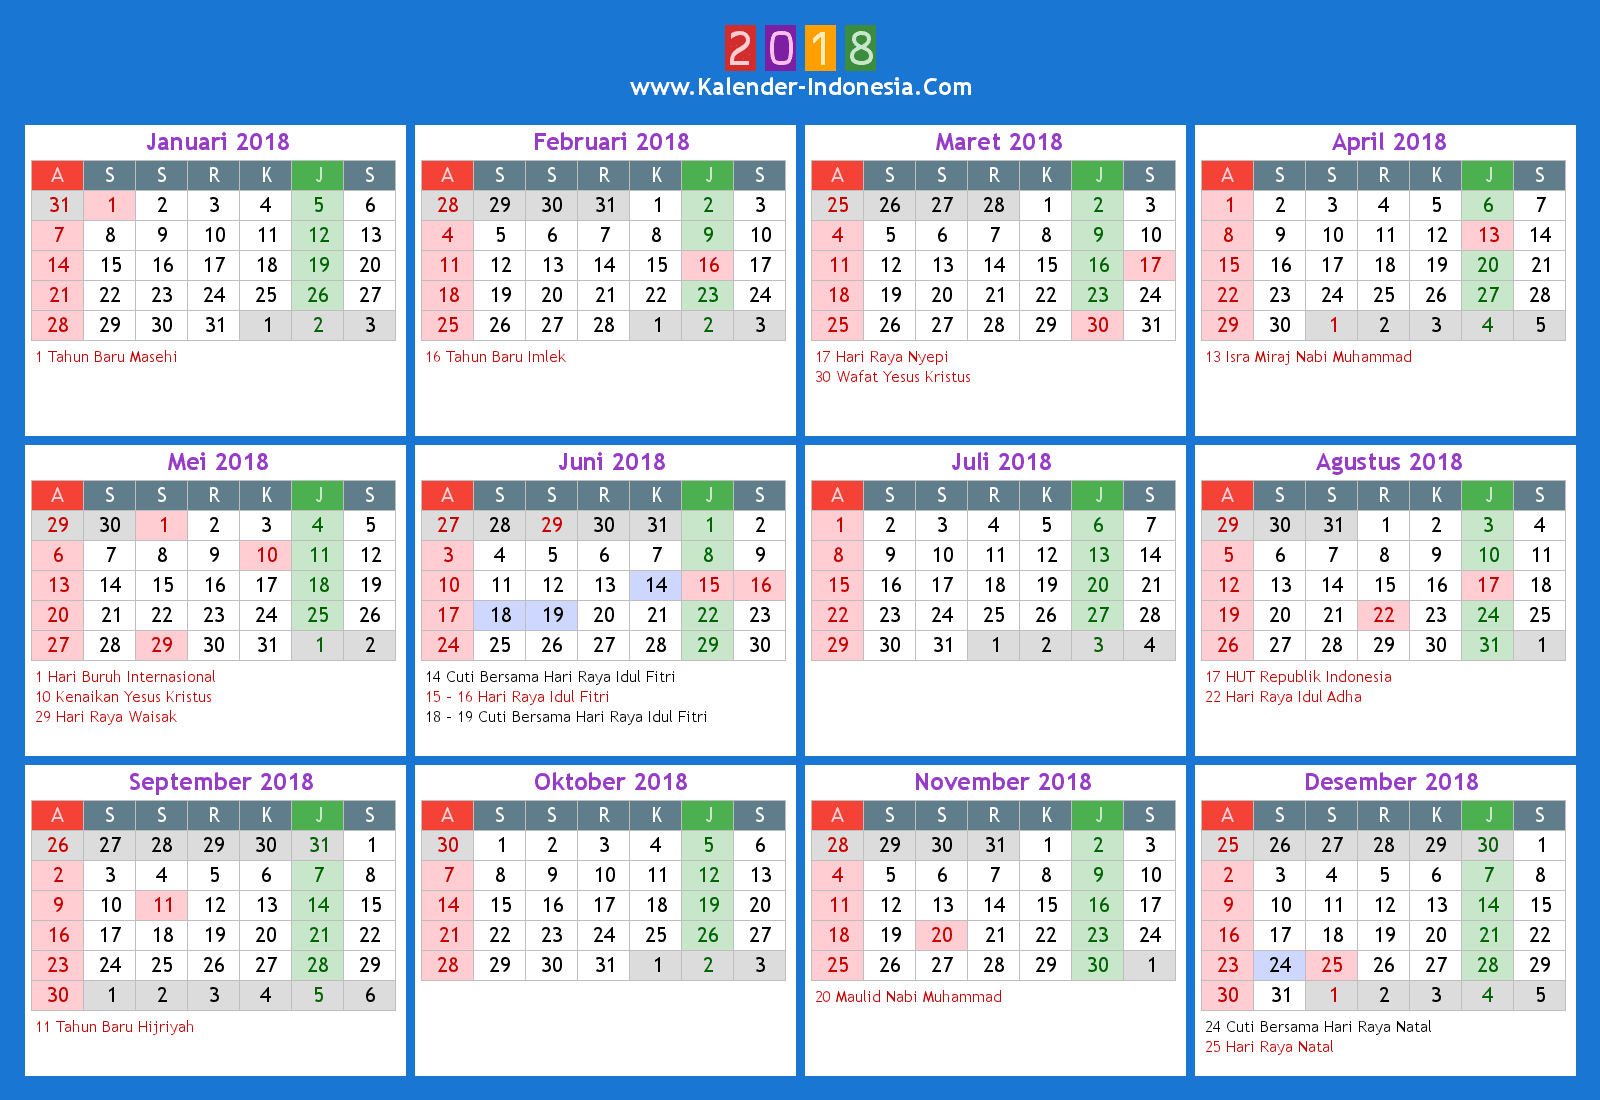 Kalender Indonesia Online: 2018